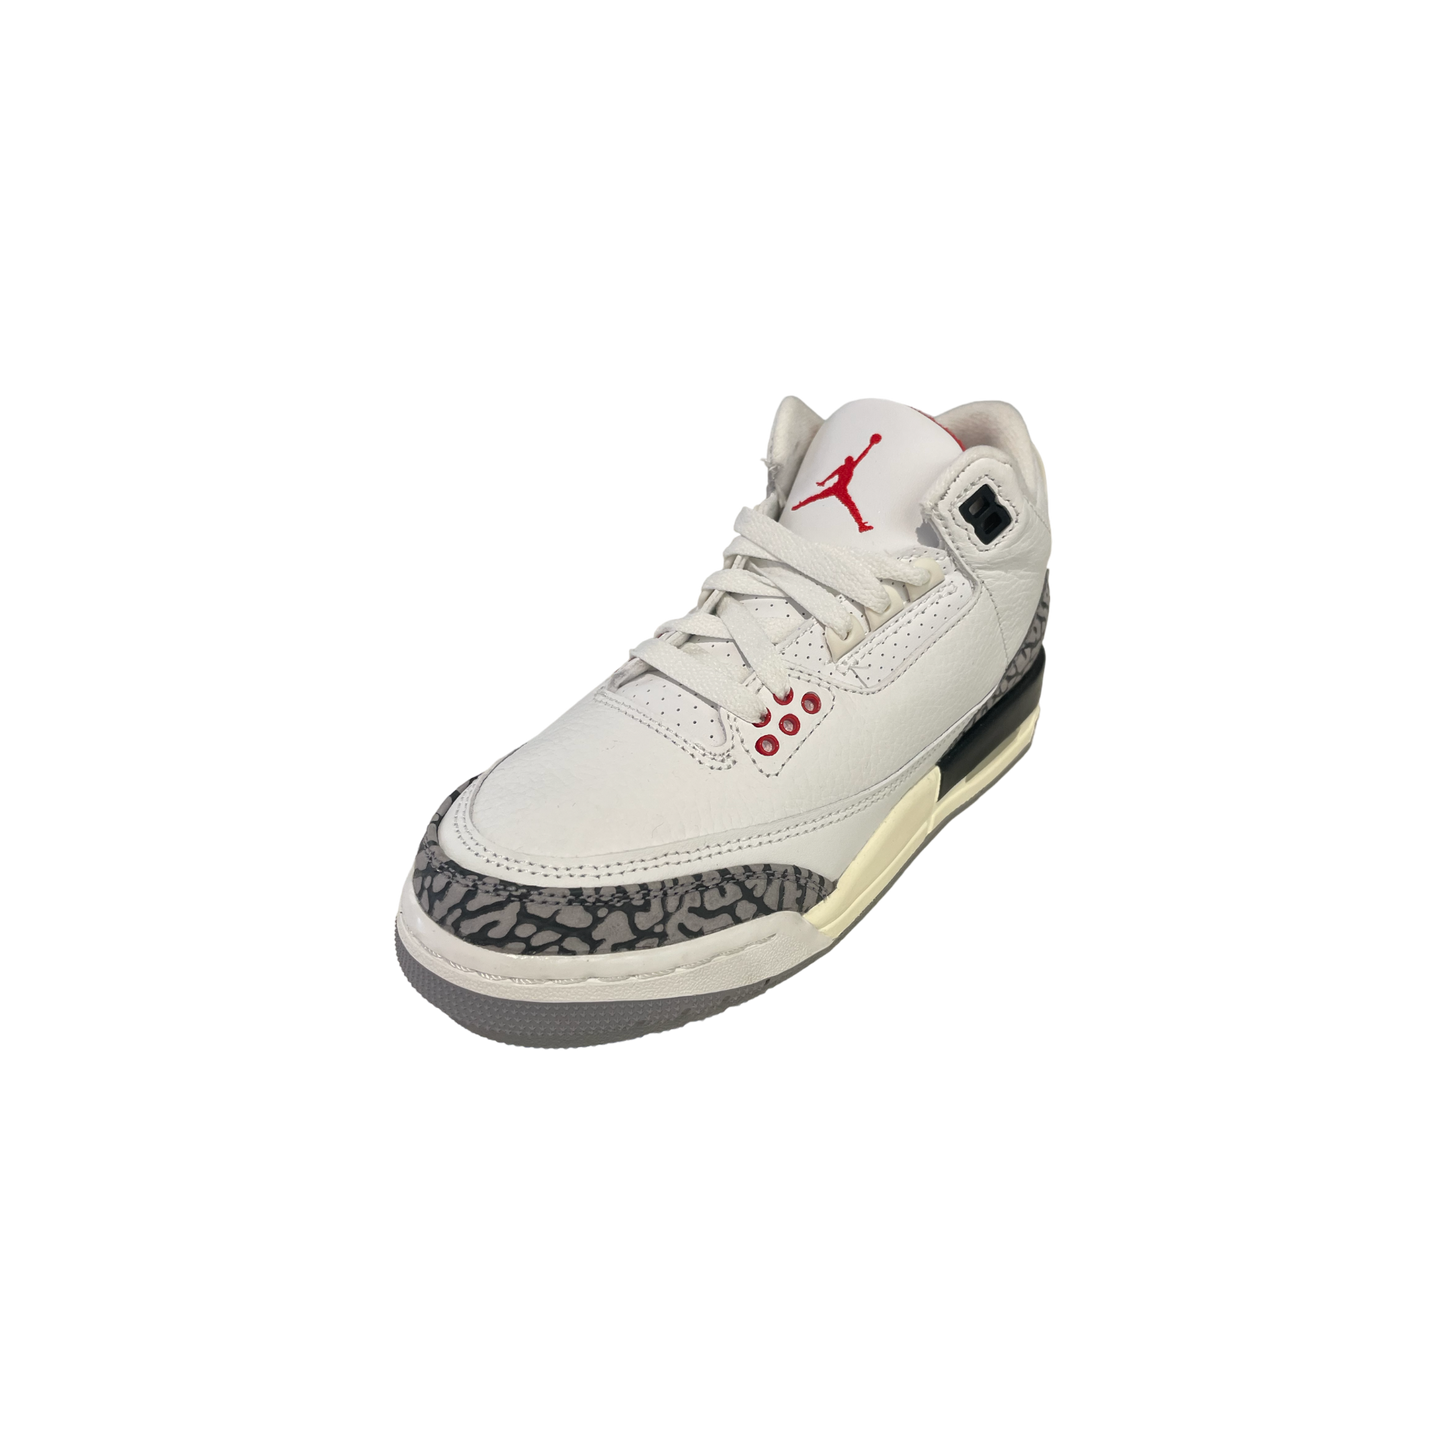 Air Jordan 3 Retro White Cement Reimagined (GS)